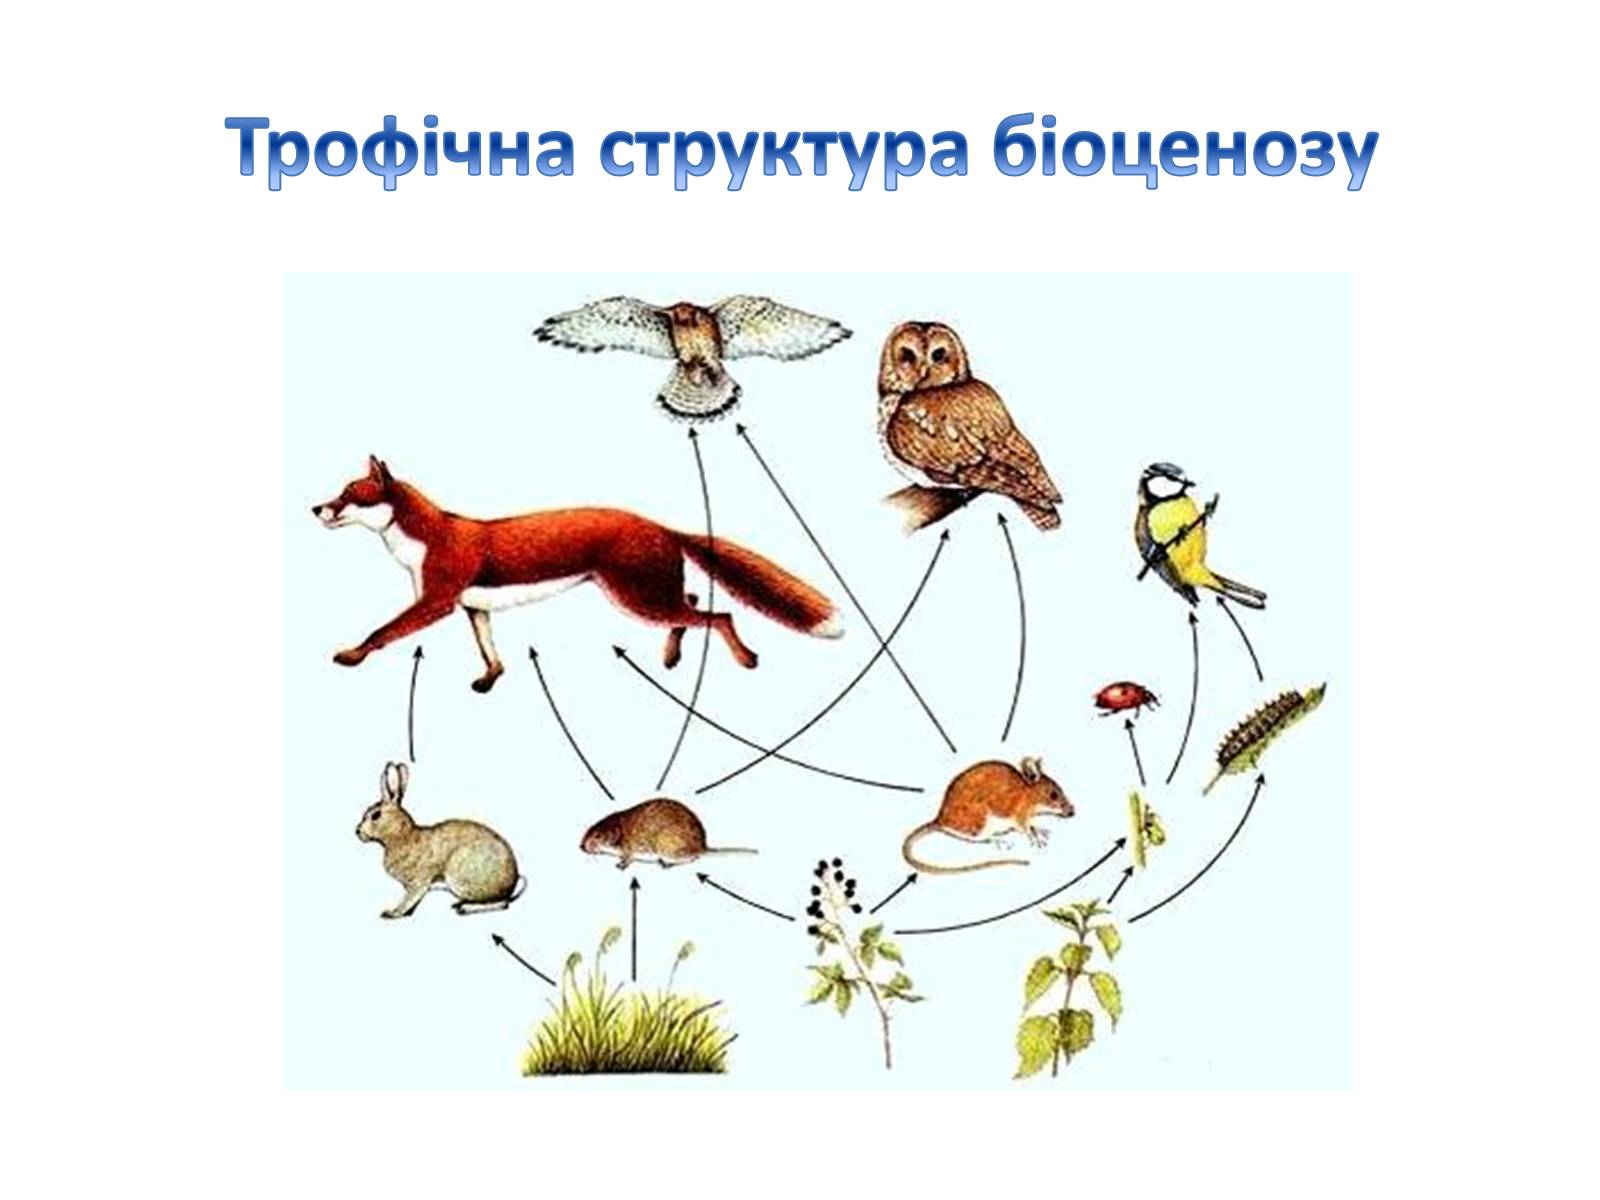 Сообщество обитающих совместно организмов разных видов вместе